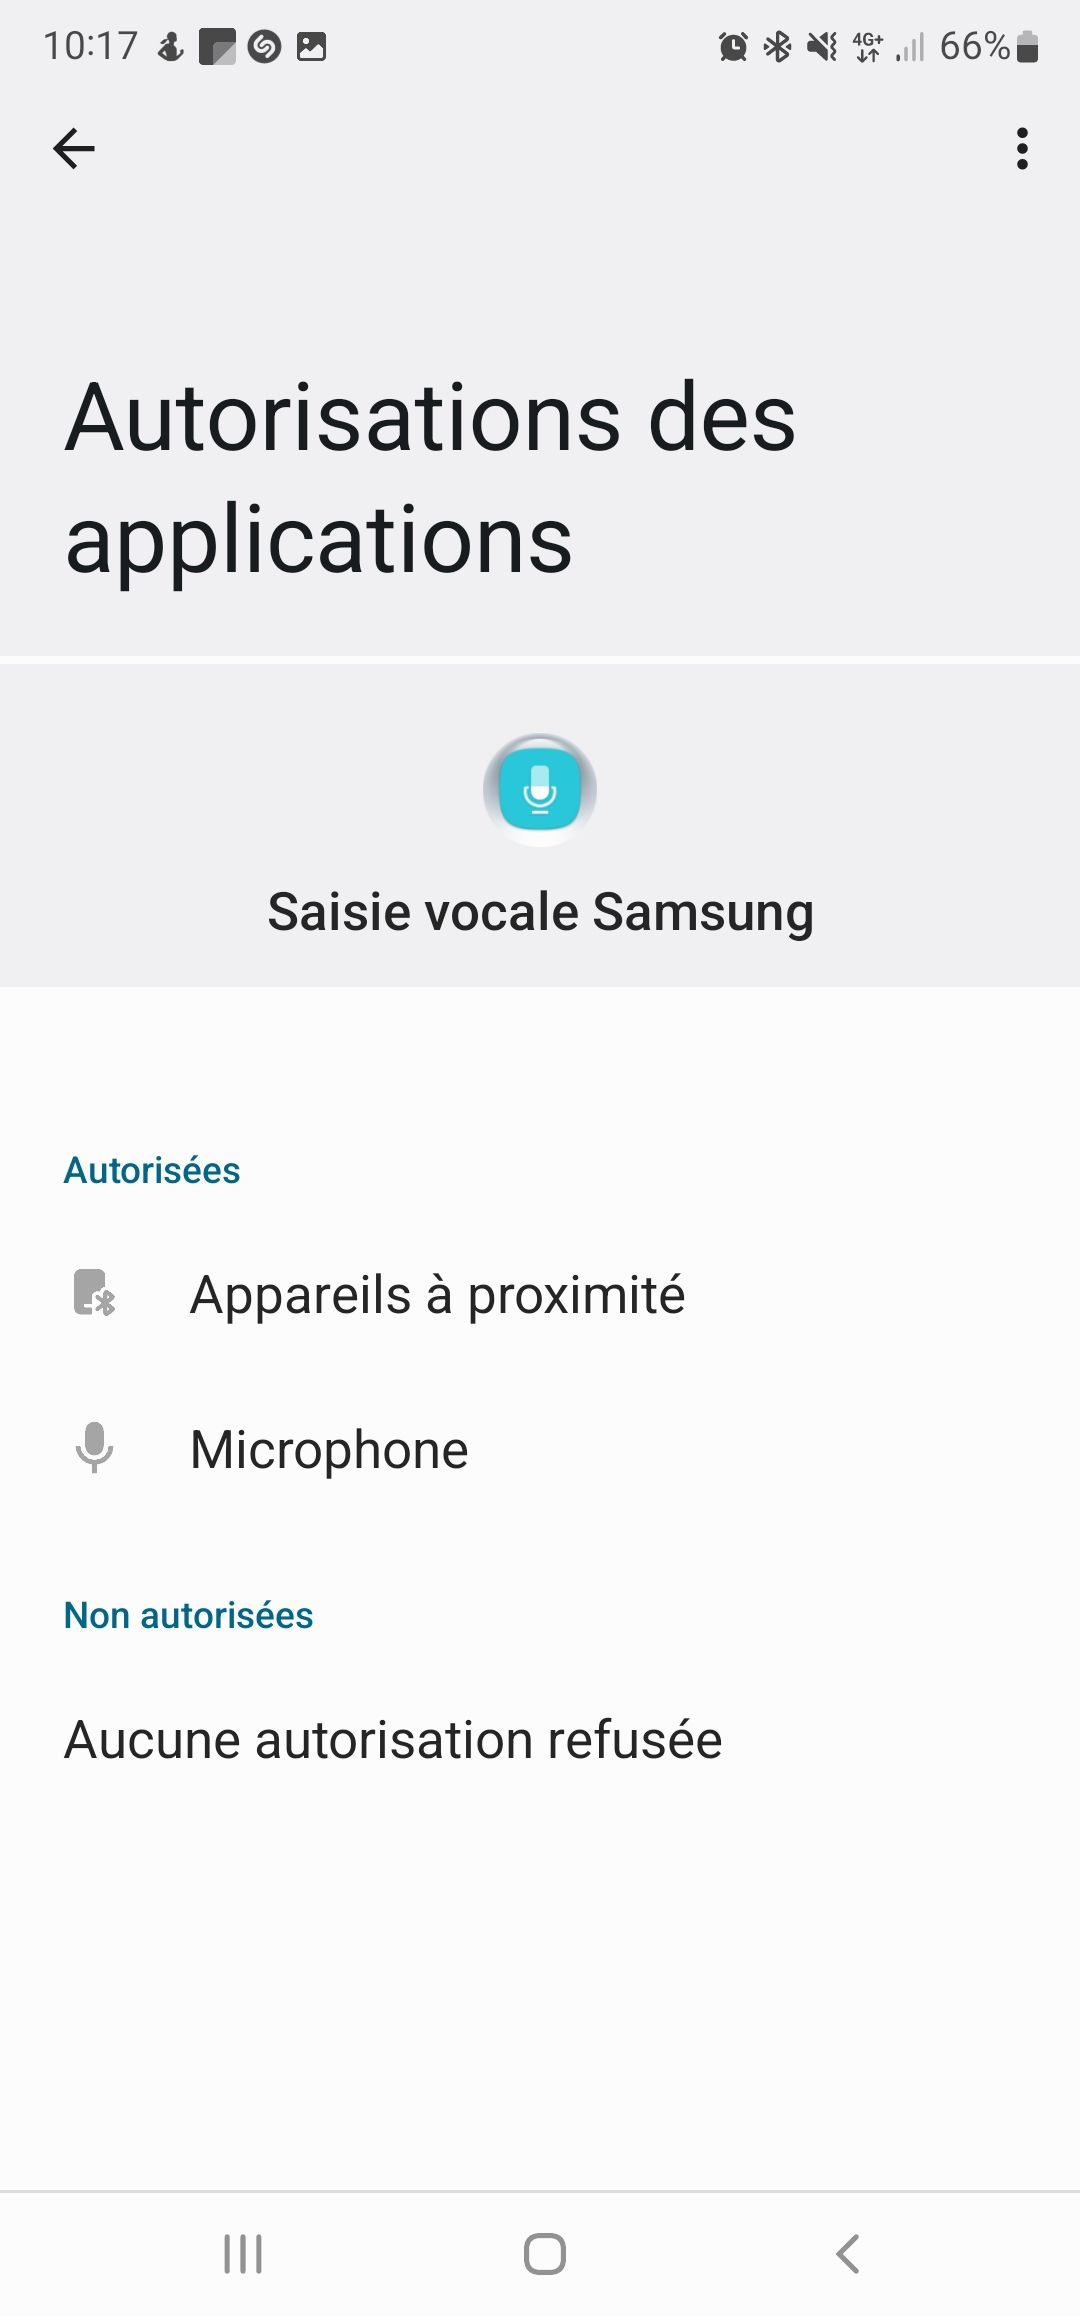 Saisie vocale clavier samsung - Samsung Community